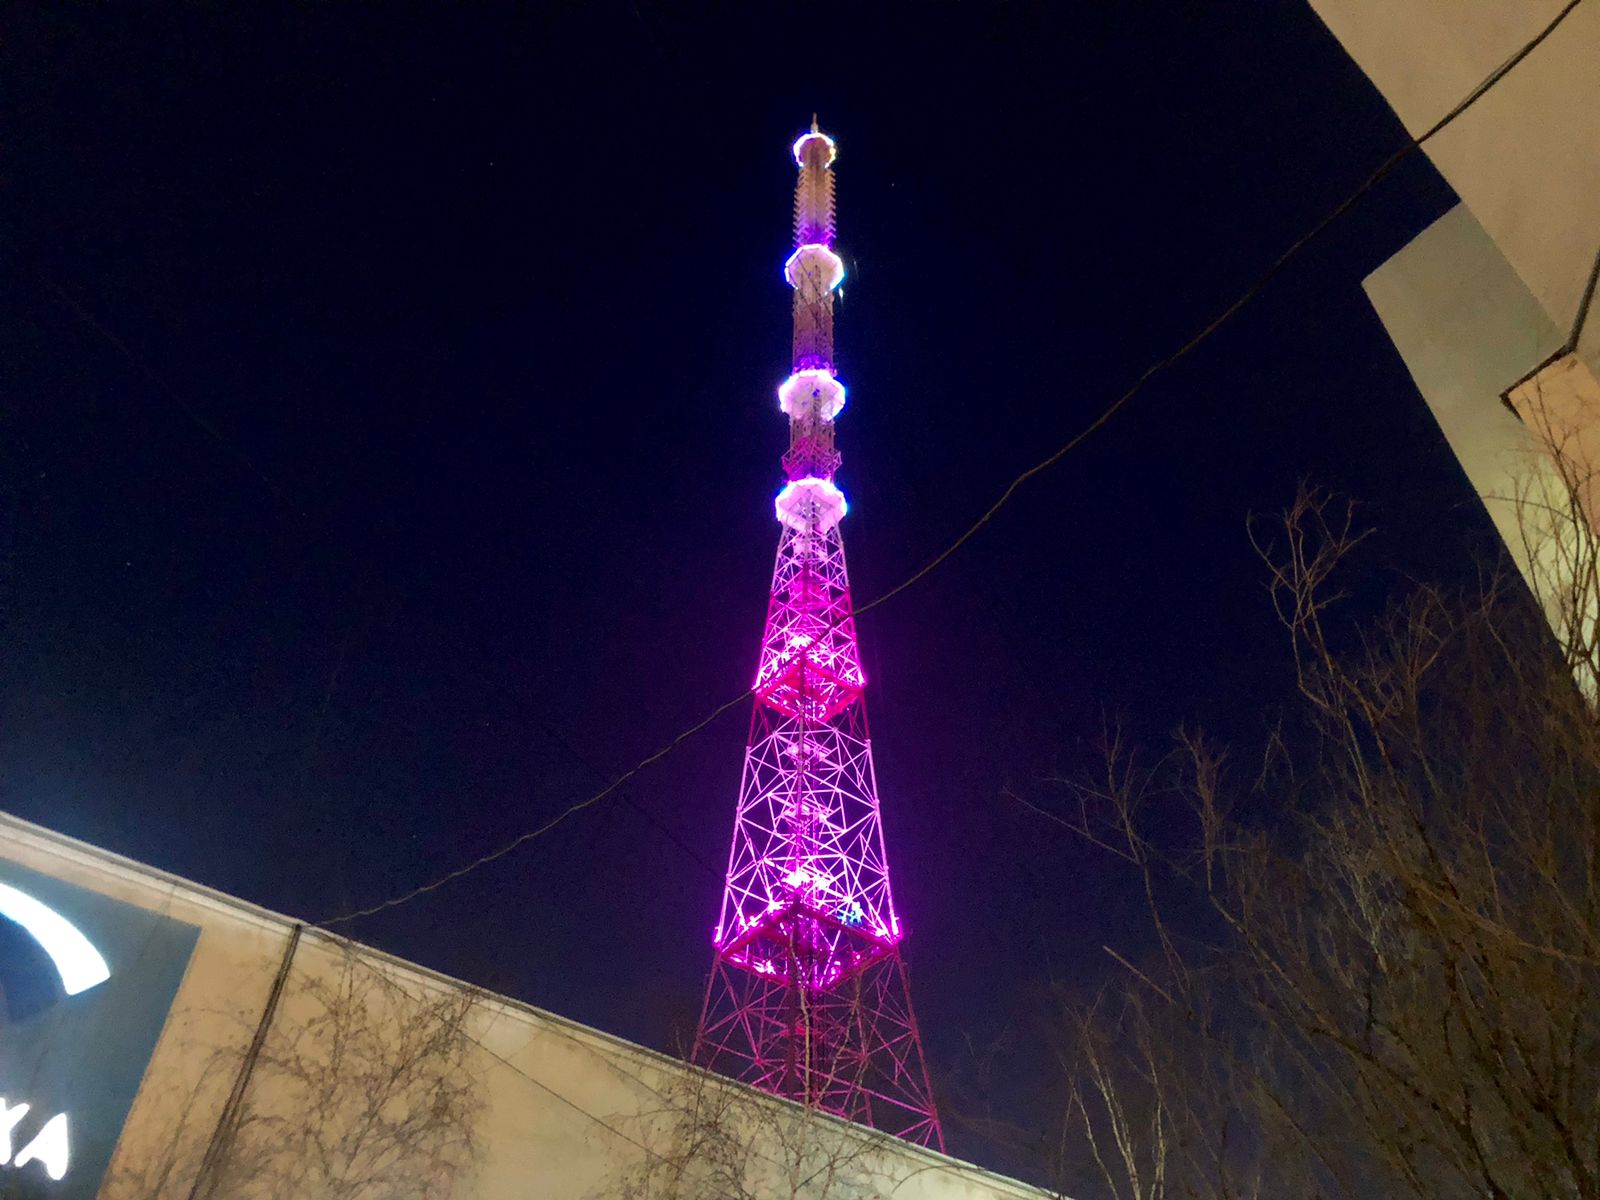 Якутская телебашня загорелась фиолетовым цветом в честь Всемирного дня недоношенных детей